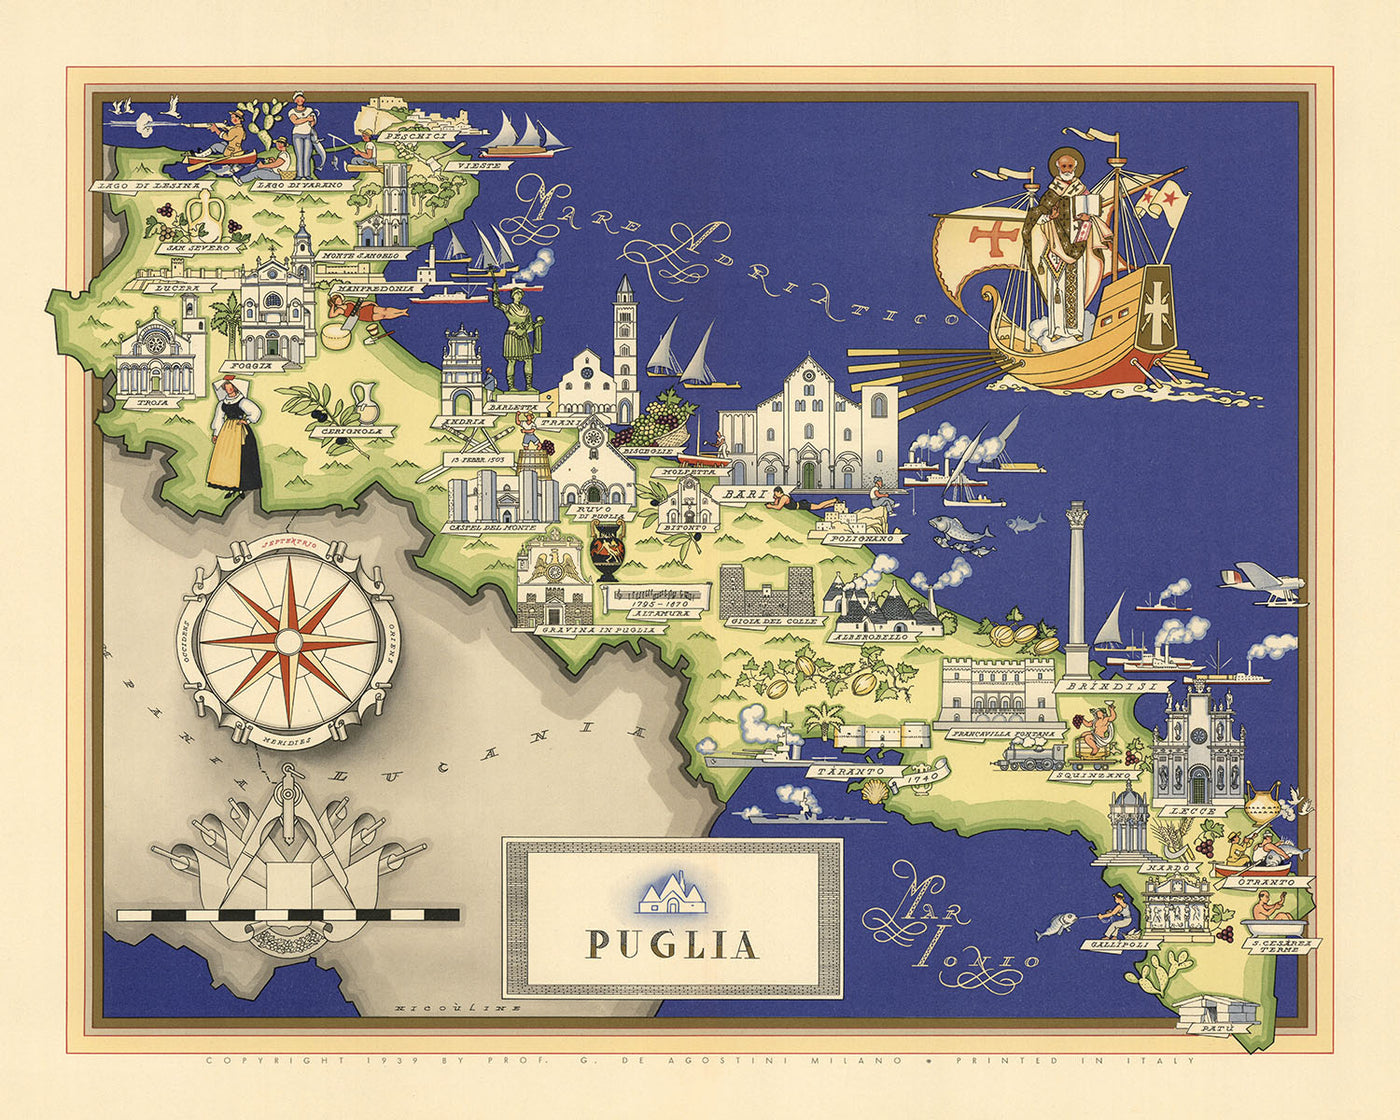 Old Pictorial Map of Apulia by De Agostini, 1938: Bari, Brindisi, Foggia, Lecce, Taranto